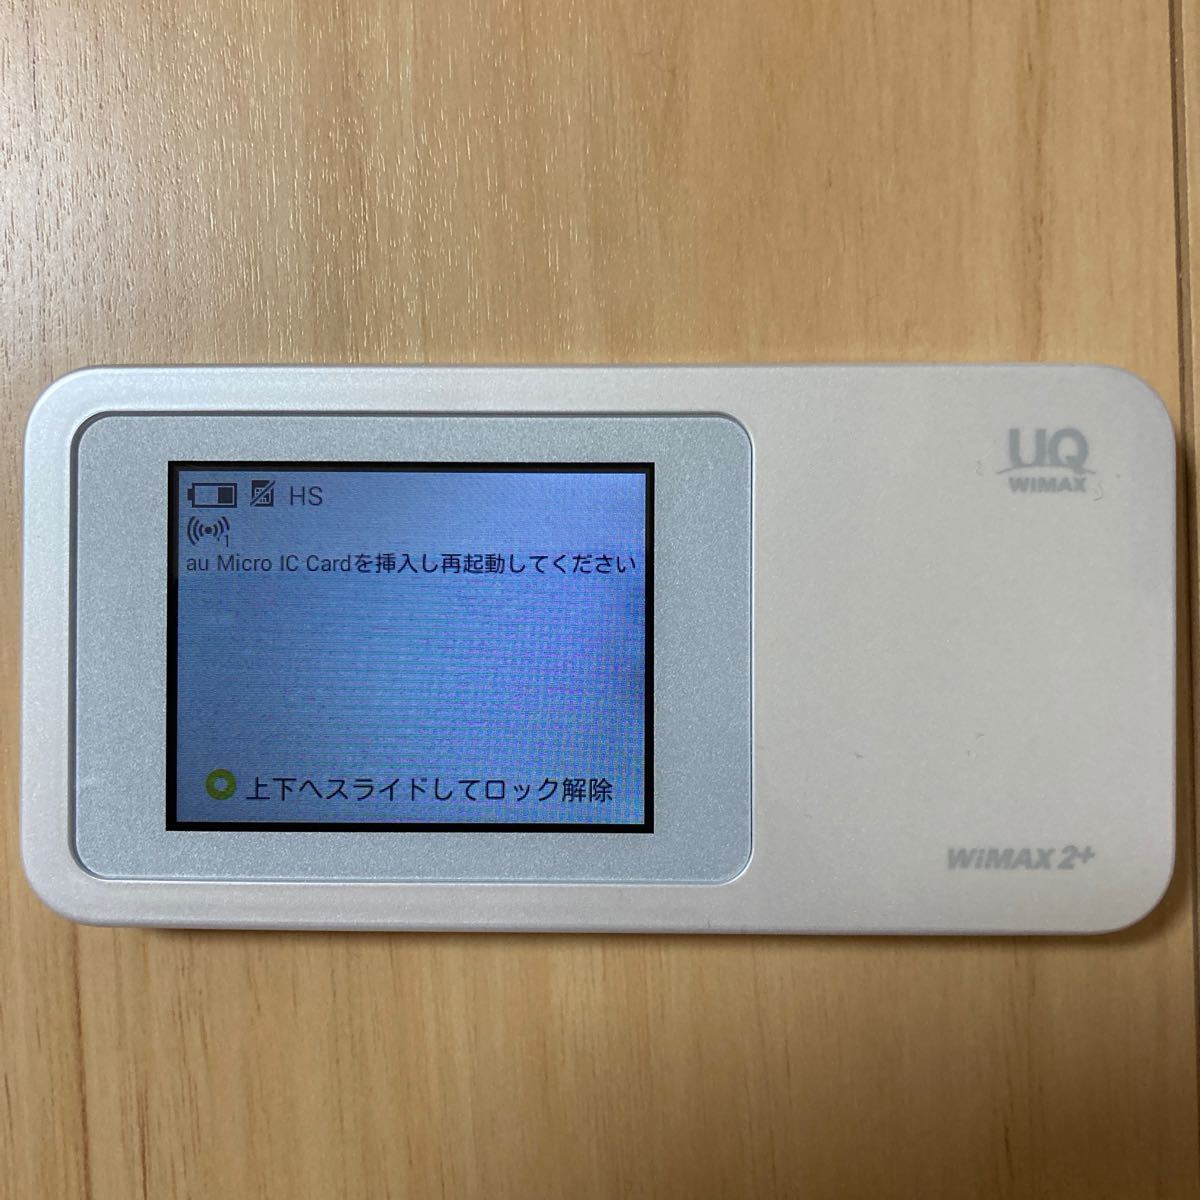 UQ WiMAX  w01